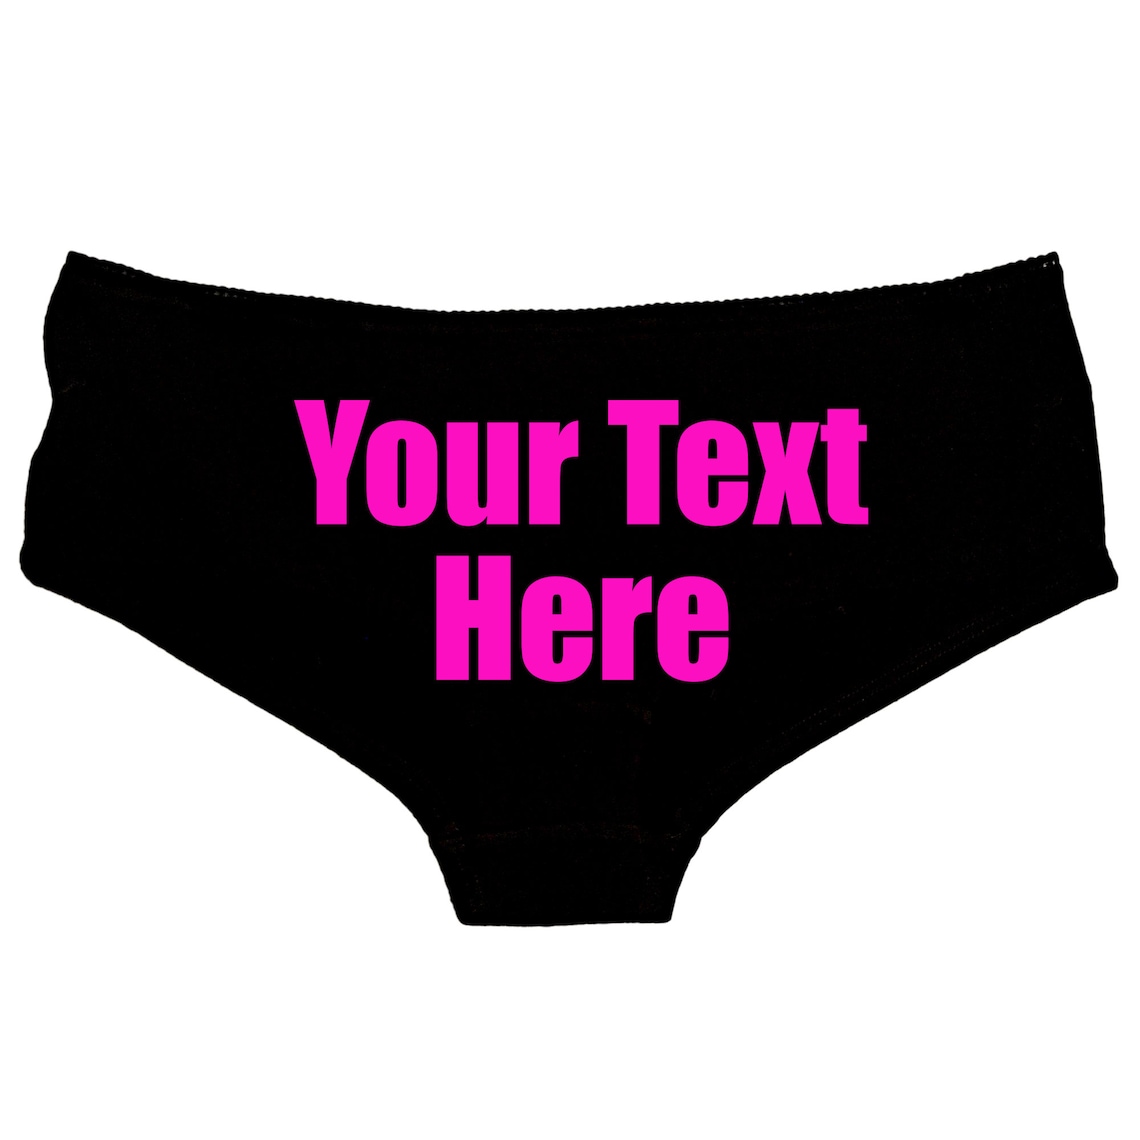 Custom Panties Personalised With Your Words Custom Printed Etsy